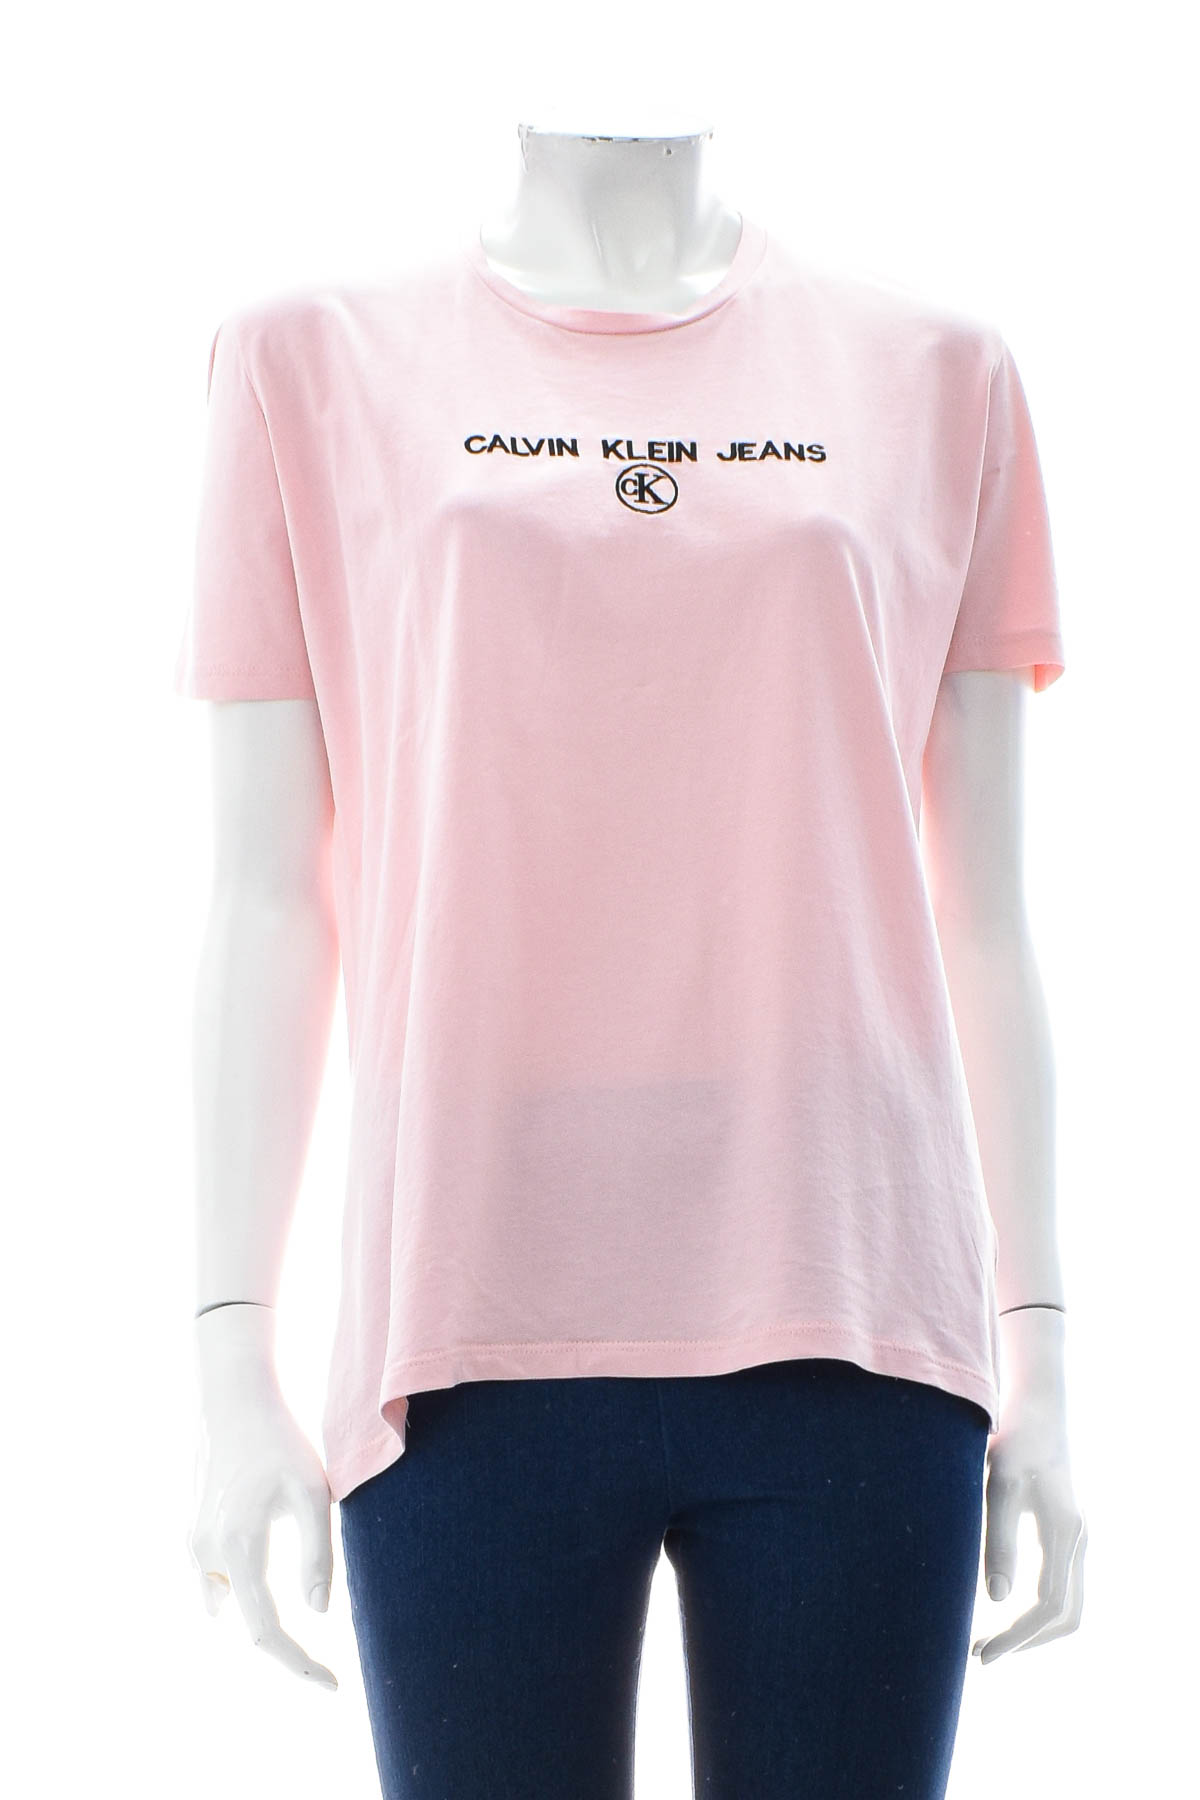 Γυναικείο μπλουζάκι - Calvin Klein Jeans - 0